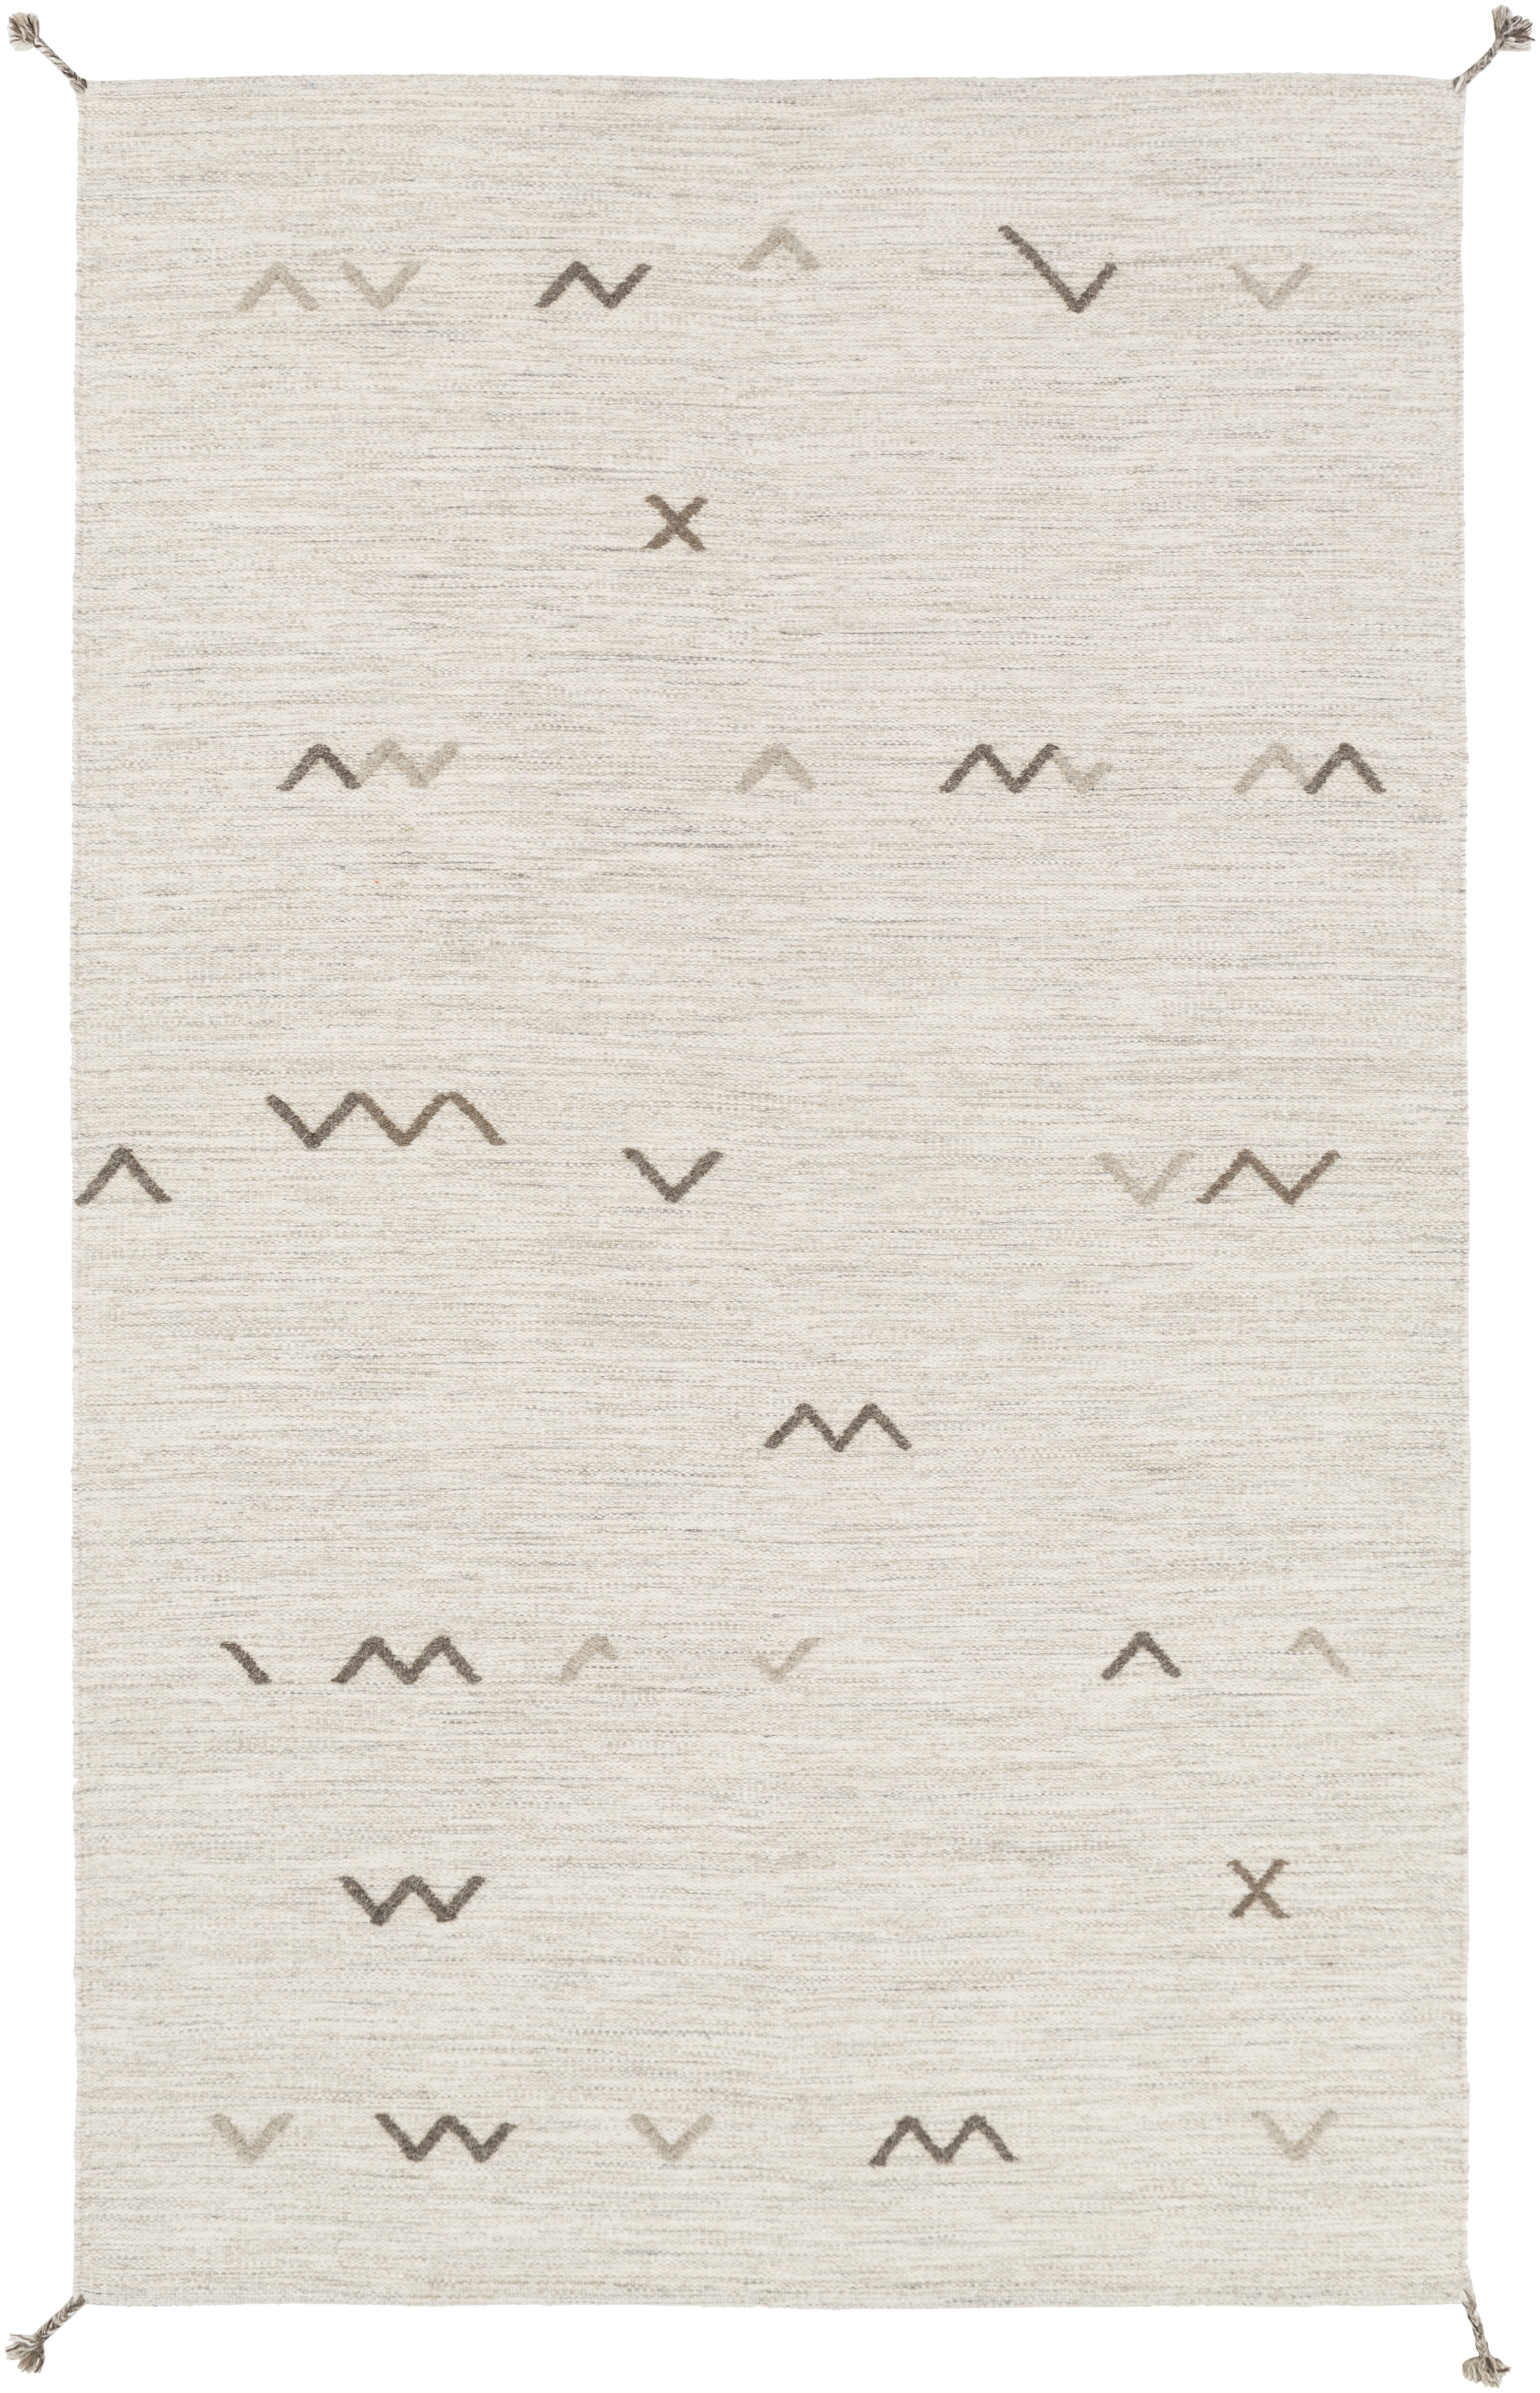 Montezuma Rug, 2' x 3' - Image 0